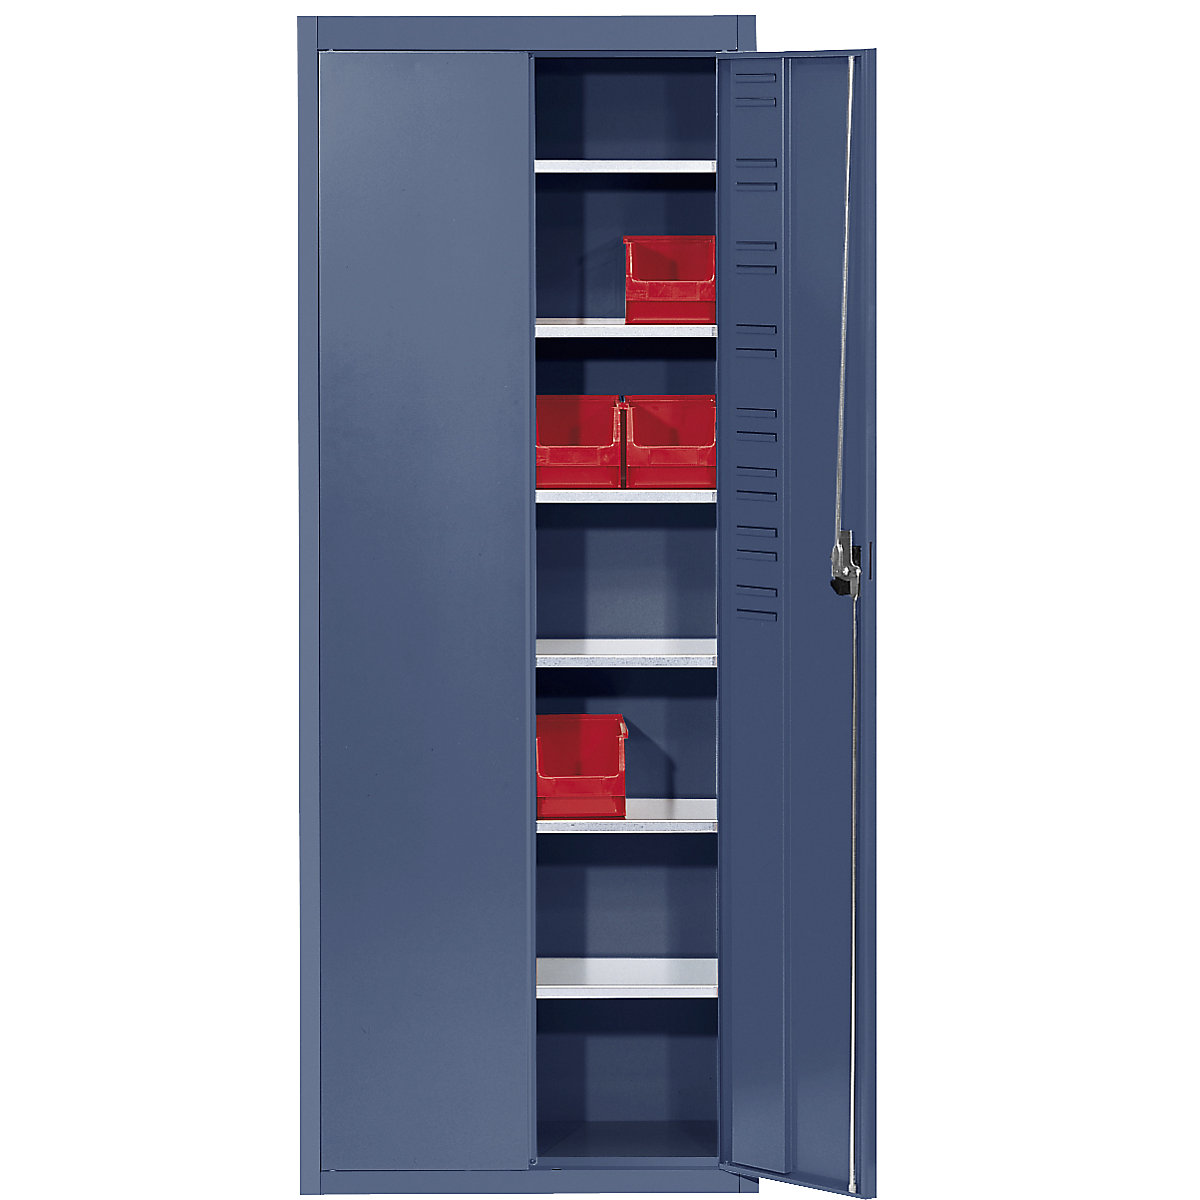 Skladišni ormar bez otvorenih skladišnih kutija – mauser, VxŠxD 1740 x 680 x 280 mm, u jednoj boji, u briljant plavoj boji, od 3 kom.-7